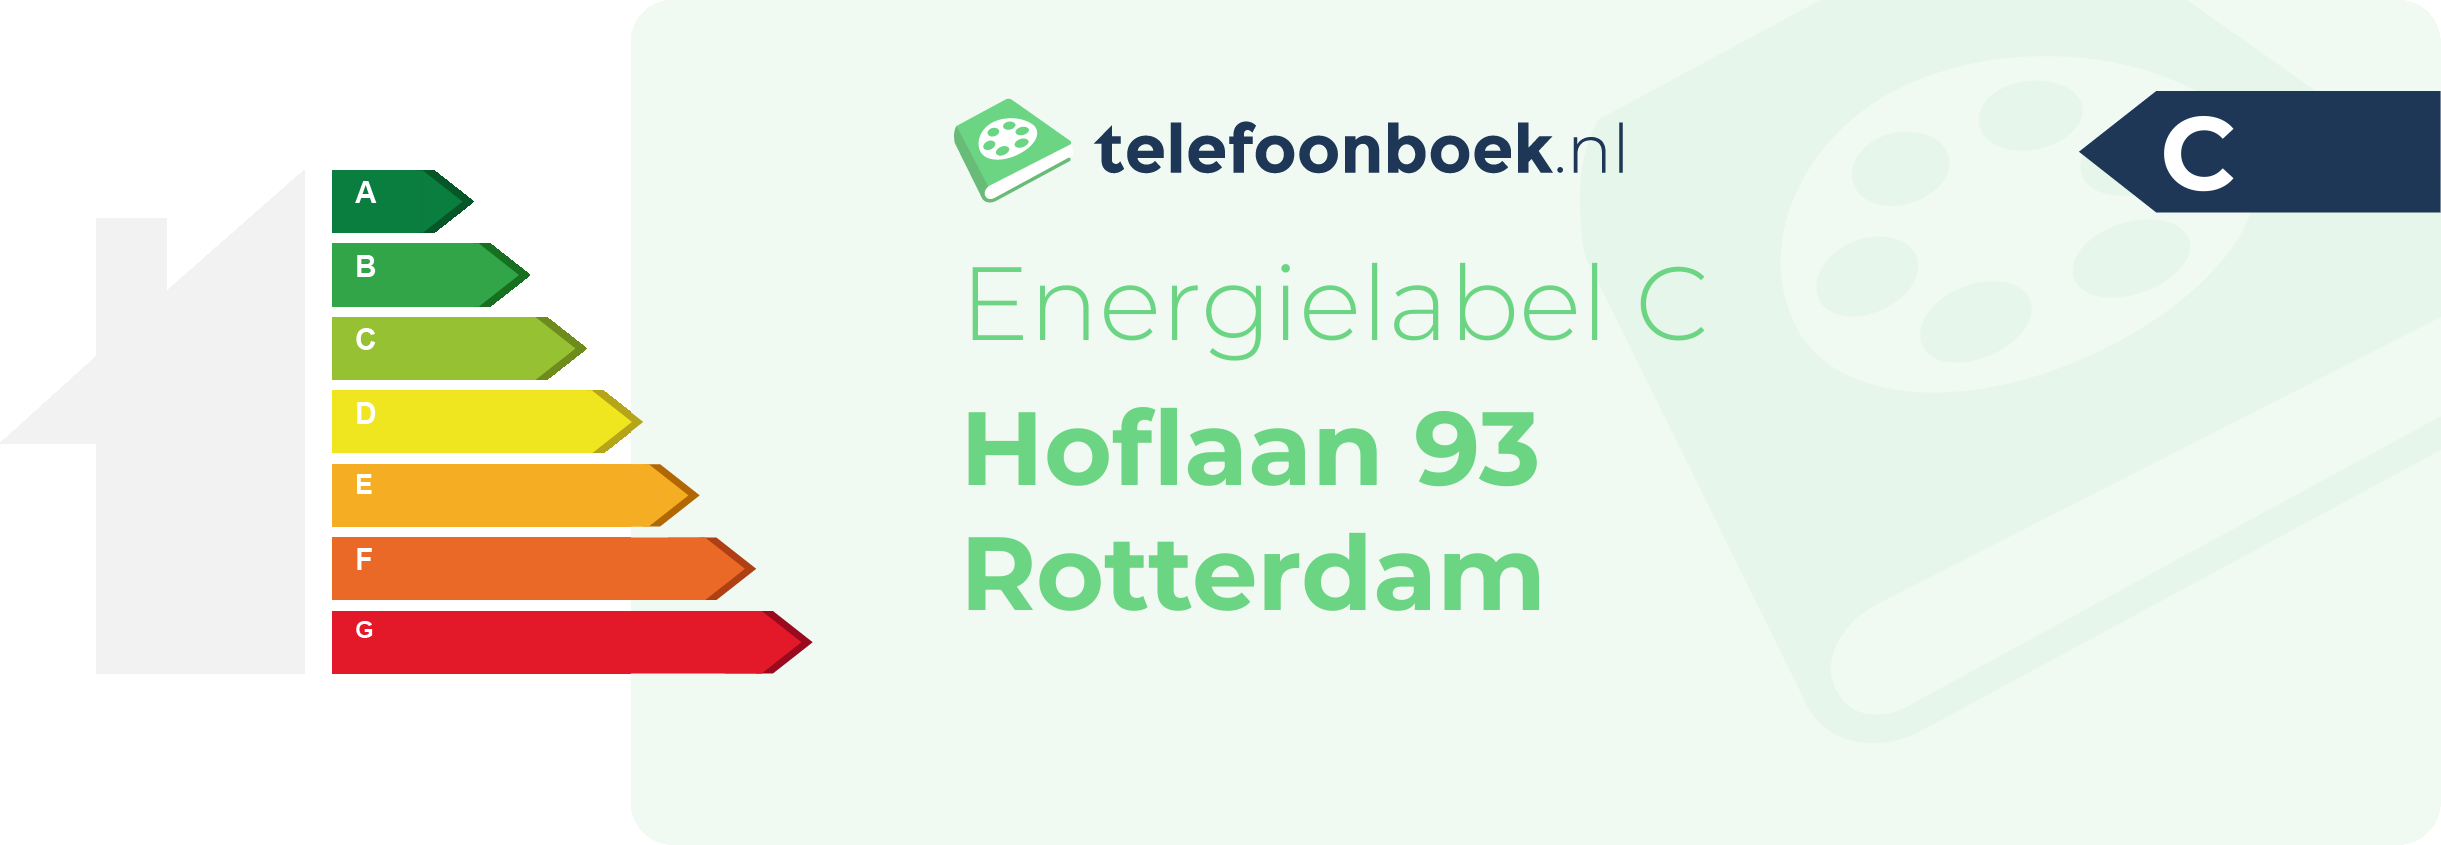 Energielabel Hoflaan 93 Rotterdam